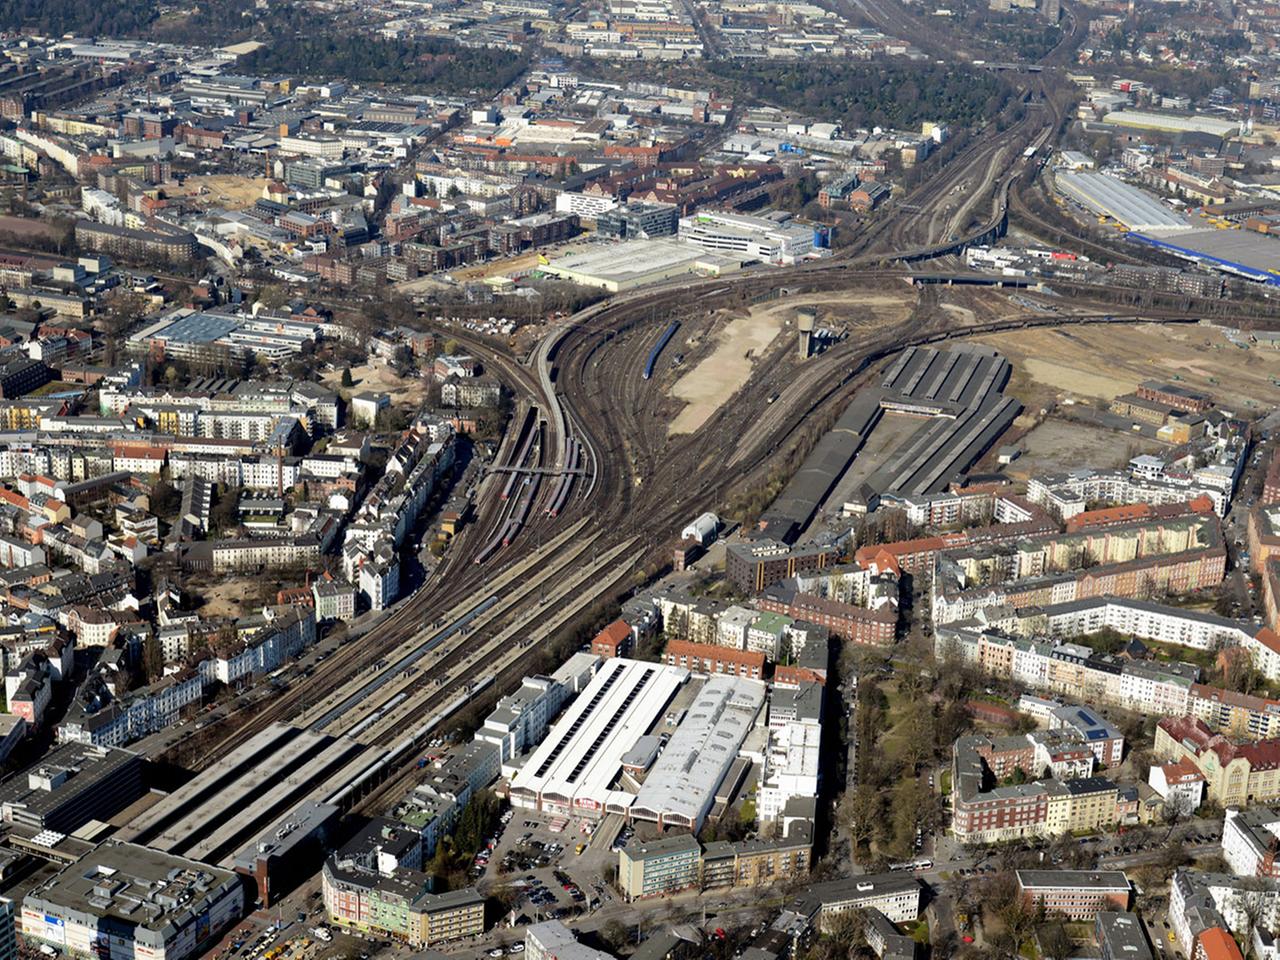 Das Luftbild zeigt das Projektgebiet Mitte Altona zwischen dem Bahnhof Altona (unten links) und dem S-Bahnhof Diebsteich (oben rechts) in Hamburg.